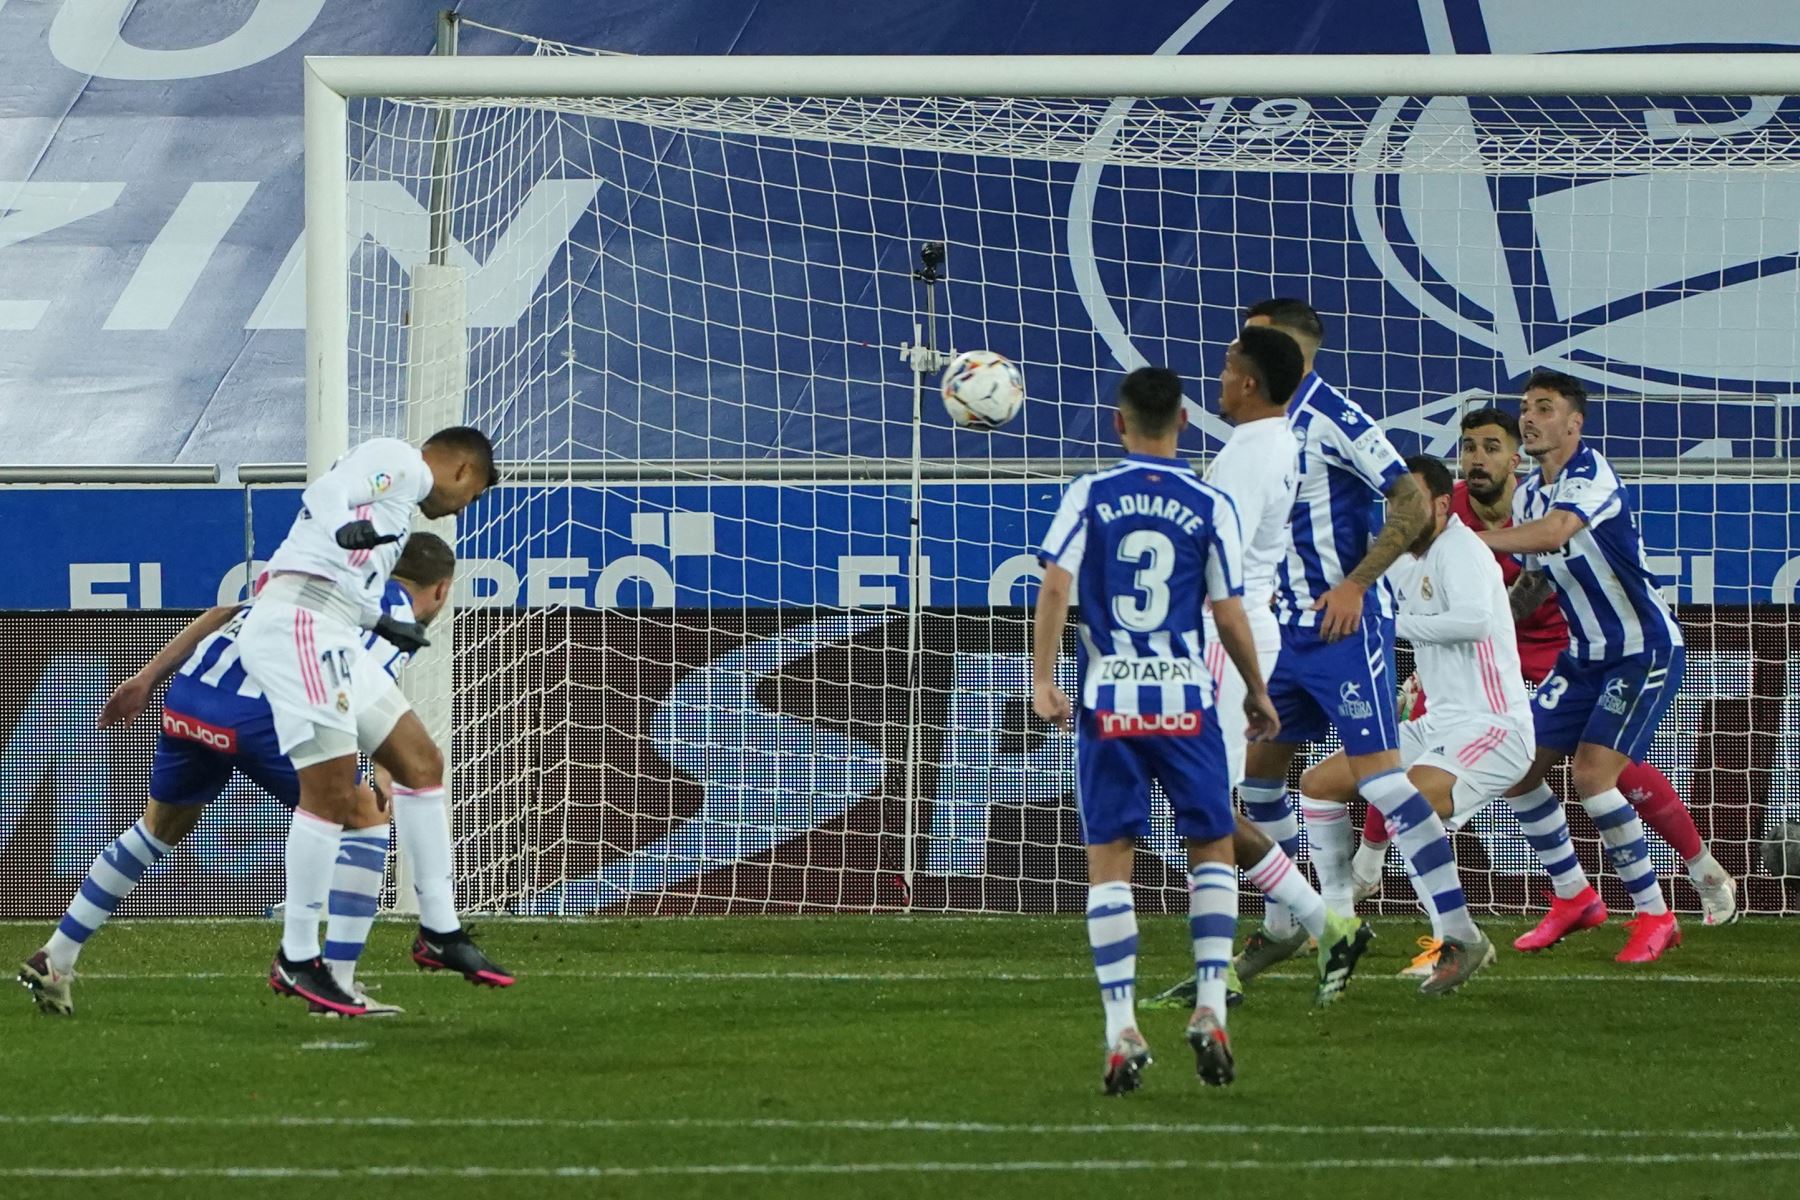 El centrocampista brasileño del Real Madrid Casemiro marca un gol durante el partido de fútbol de la liga española entre el Deportivo Alavés y el Real Madrid CF en el estadio Mendizorroza de Vitoria. Foto: AFP